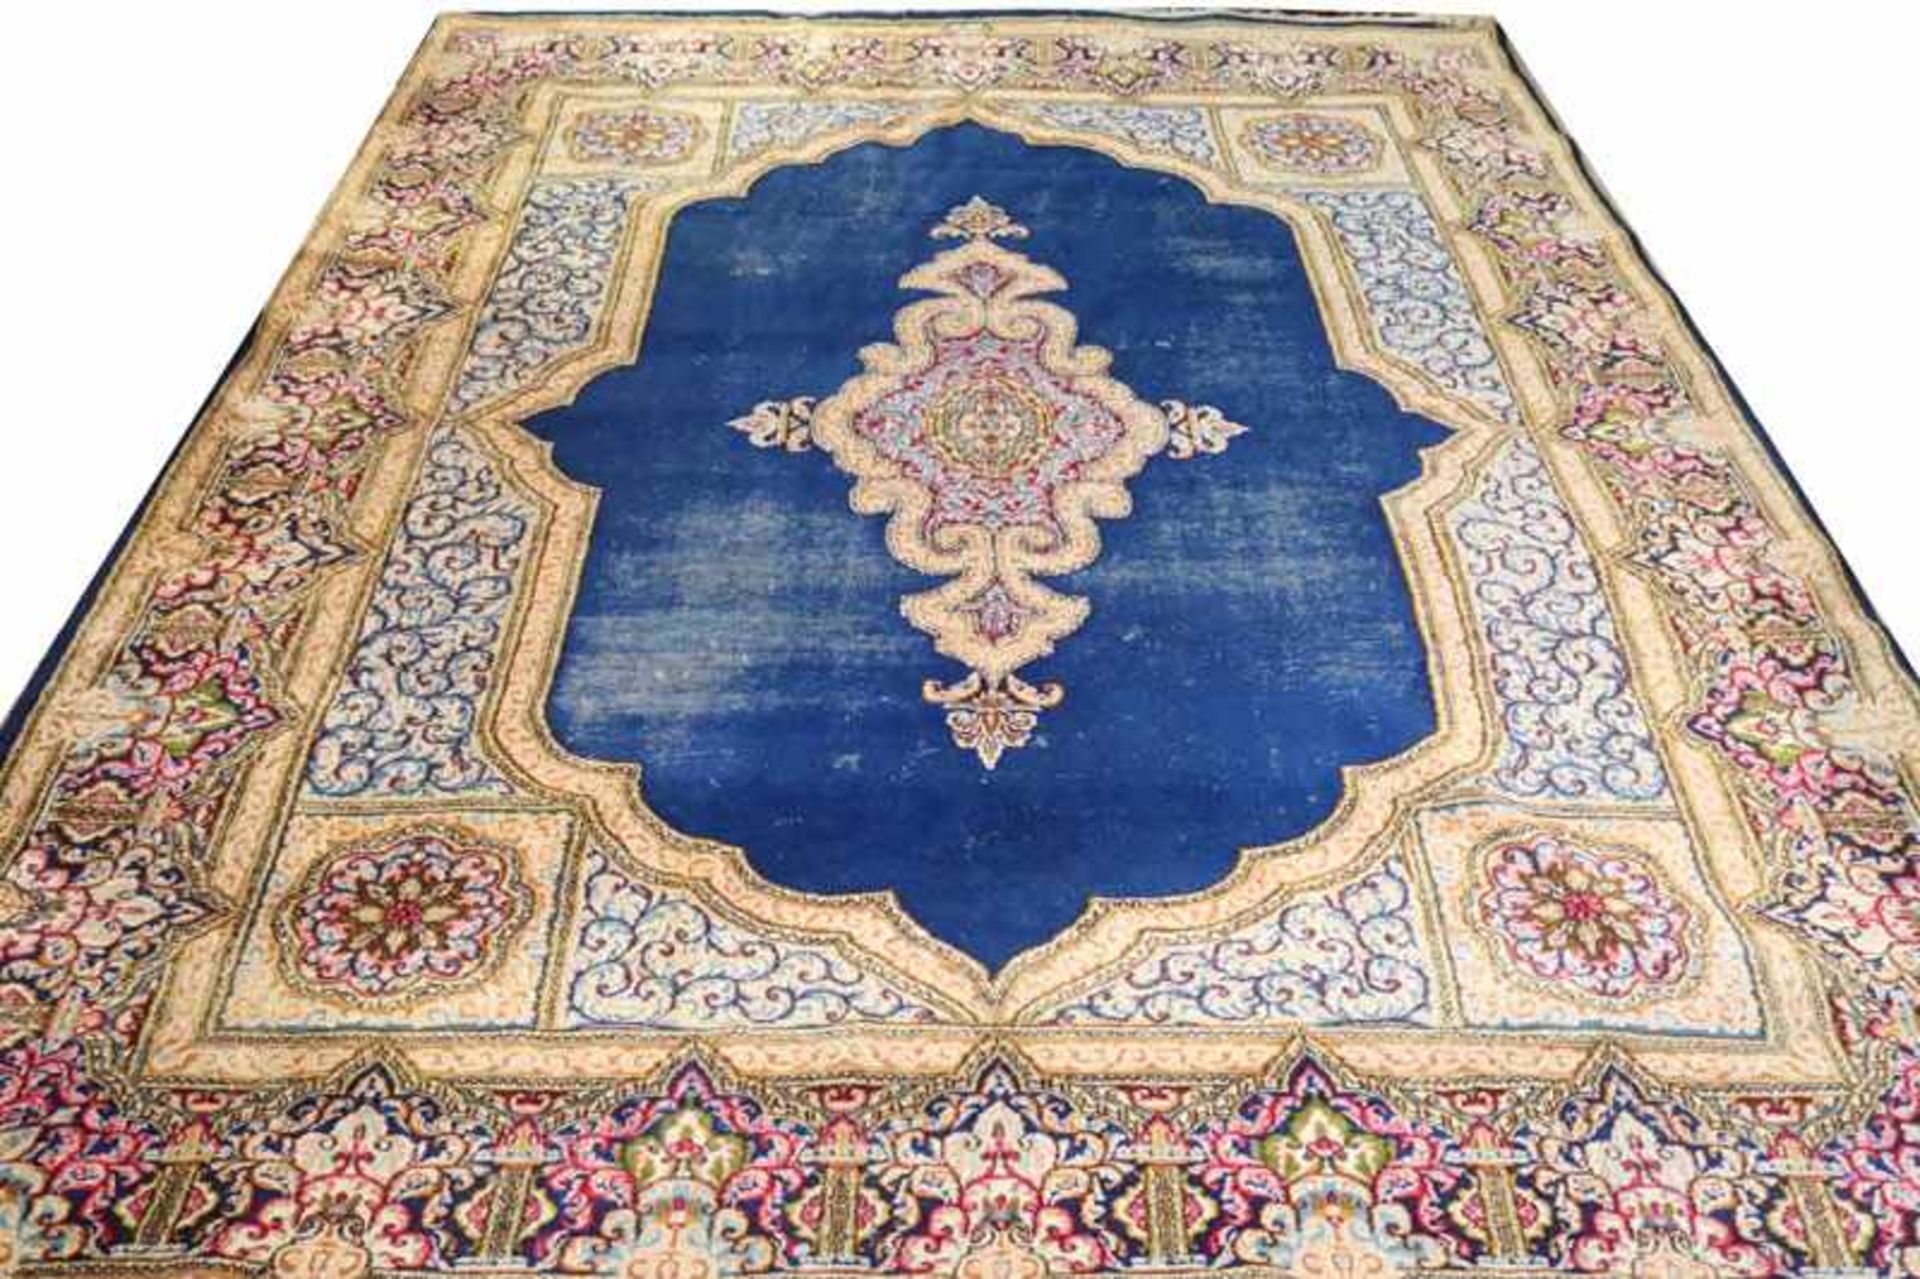 Teppich, blau/beige/bunt, sehr stark abgetreten und gebraucht, 367 cm x 274 cm